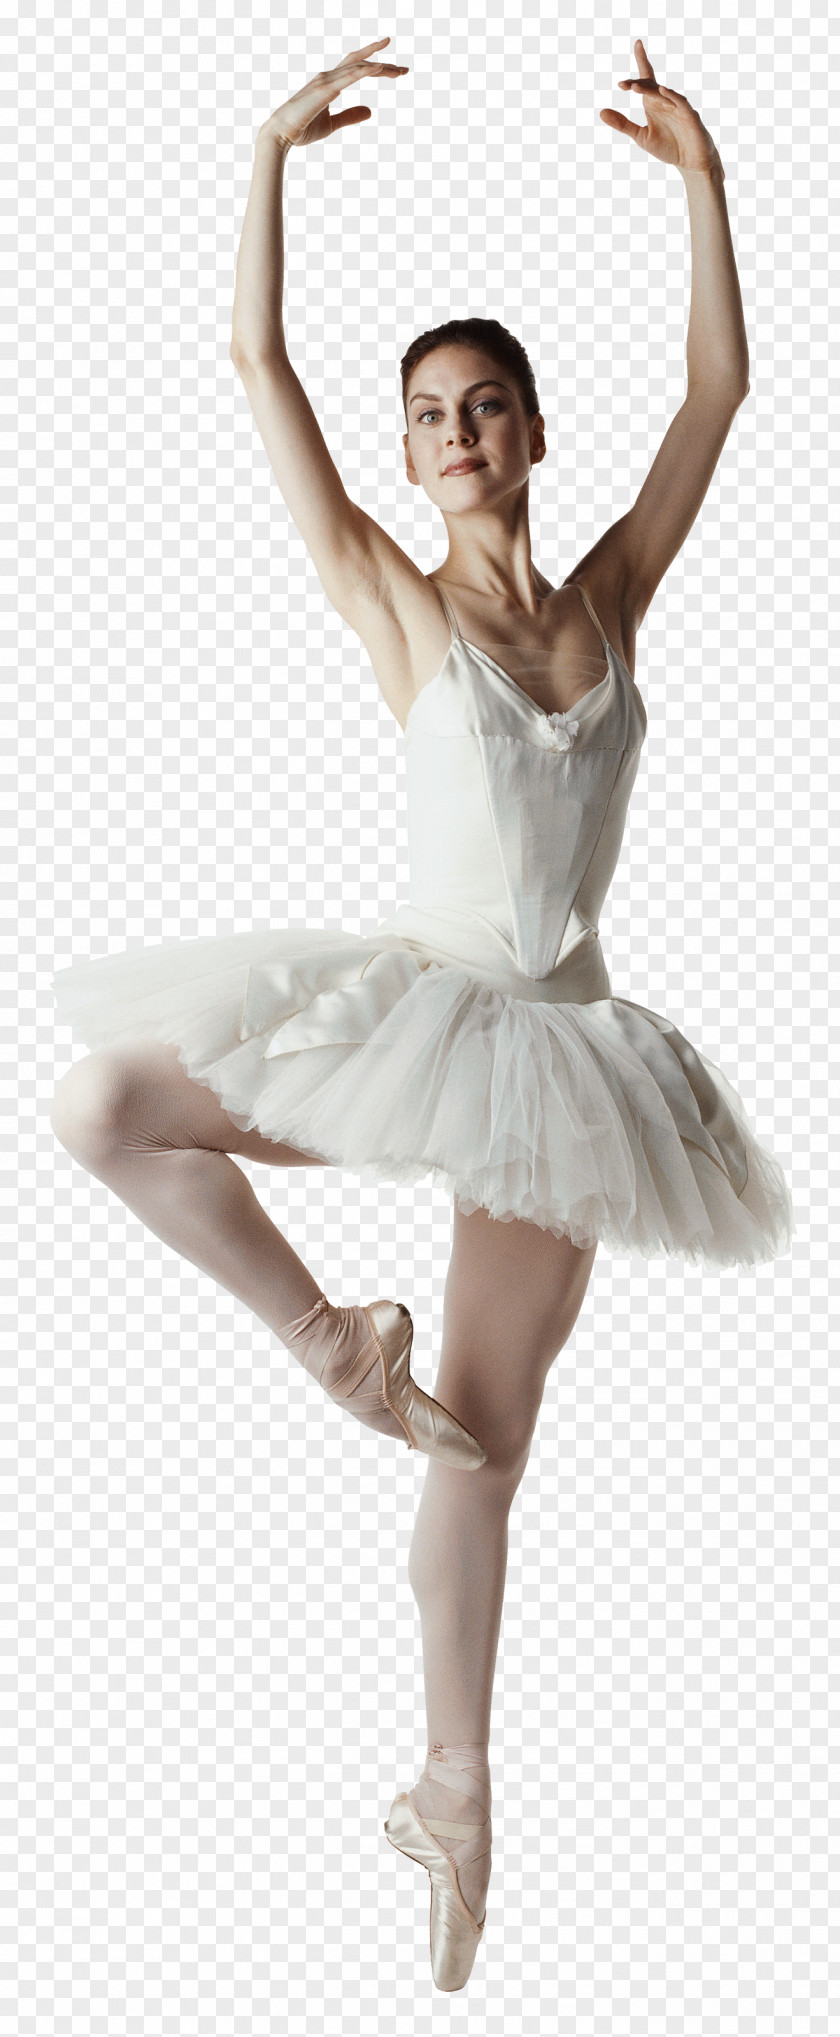 Ballet Misty Copeland Dancer PNG